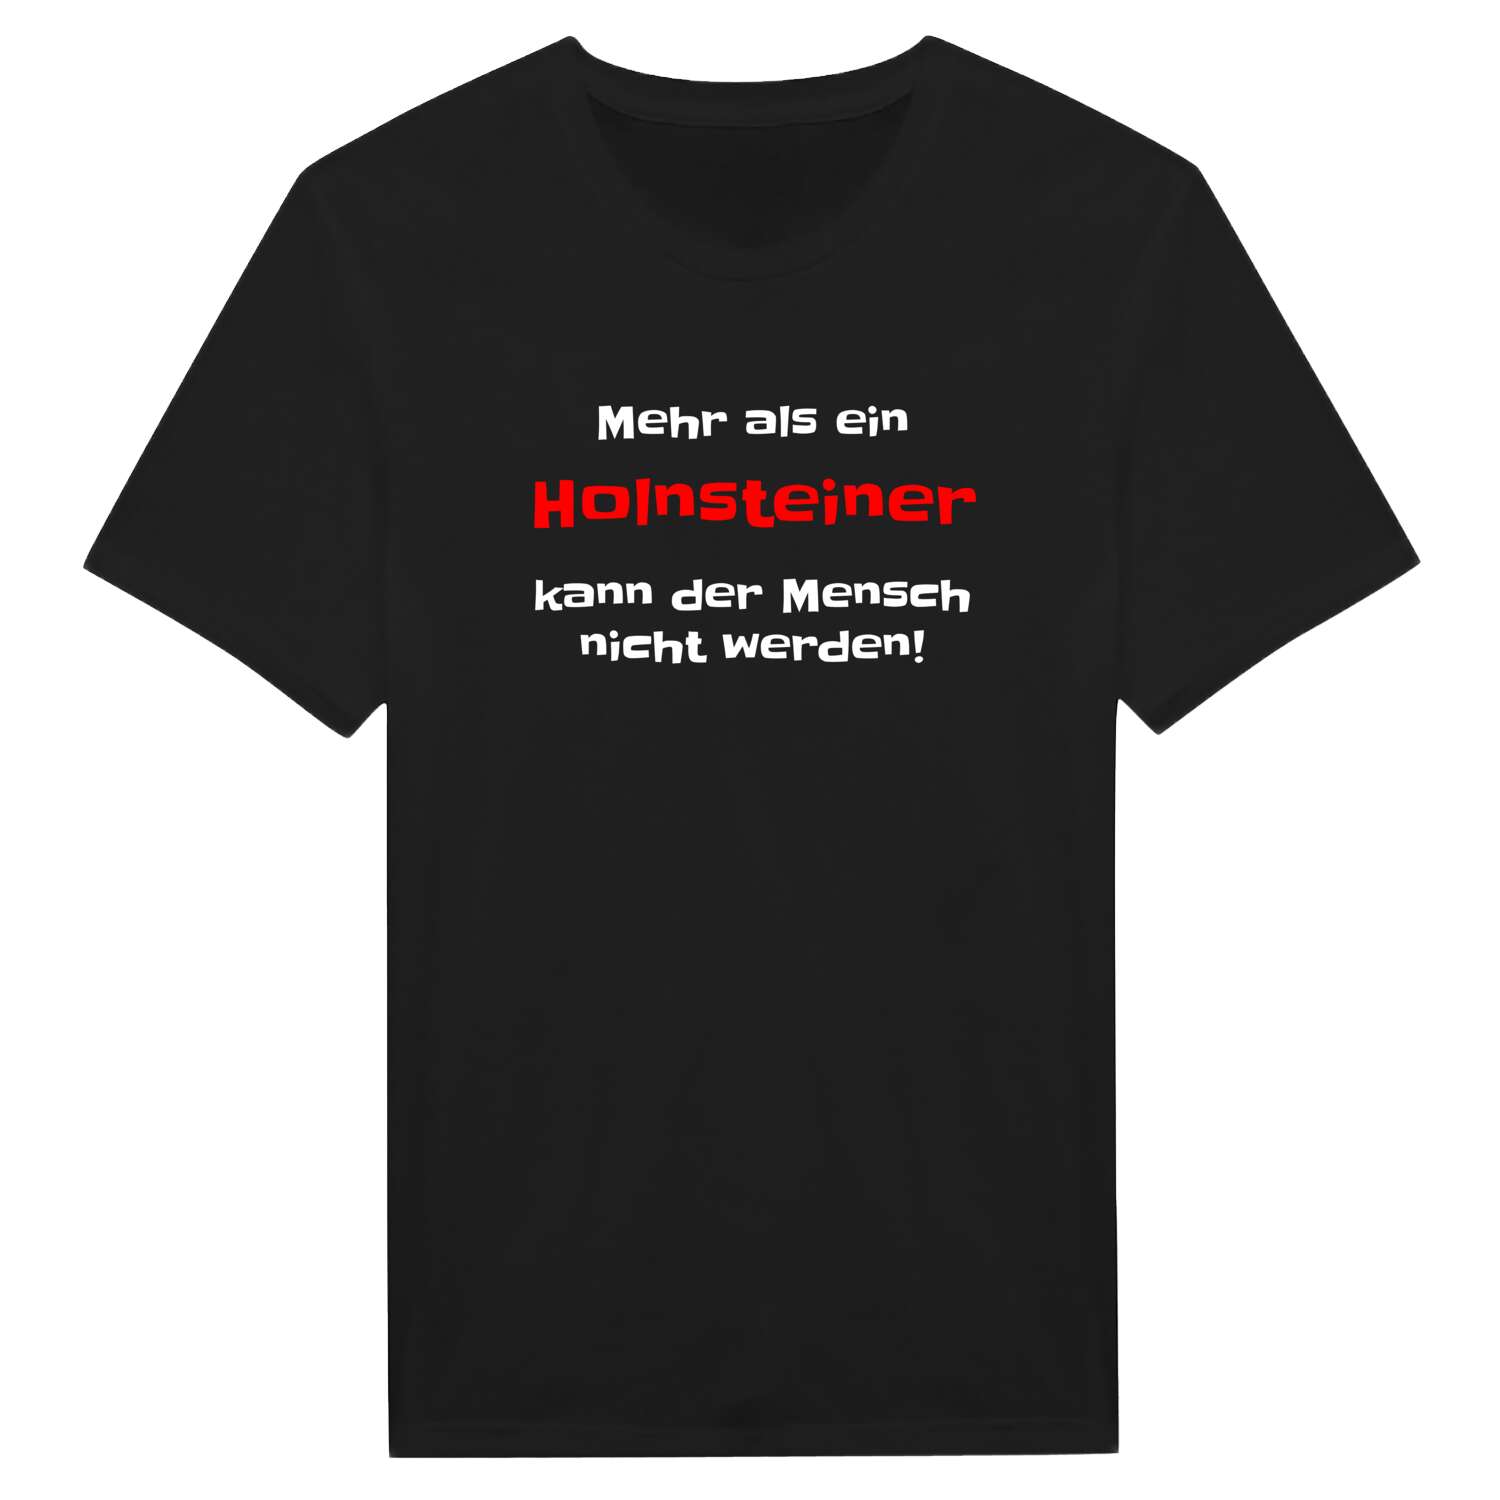 Holnstein T-Shirt »Mehr als ein«